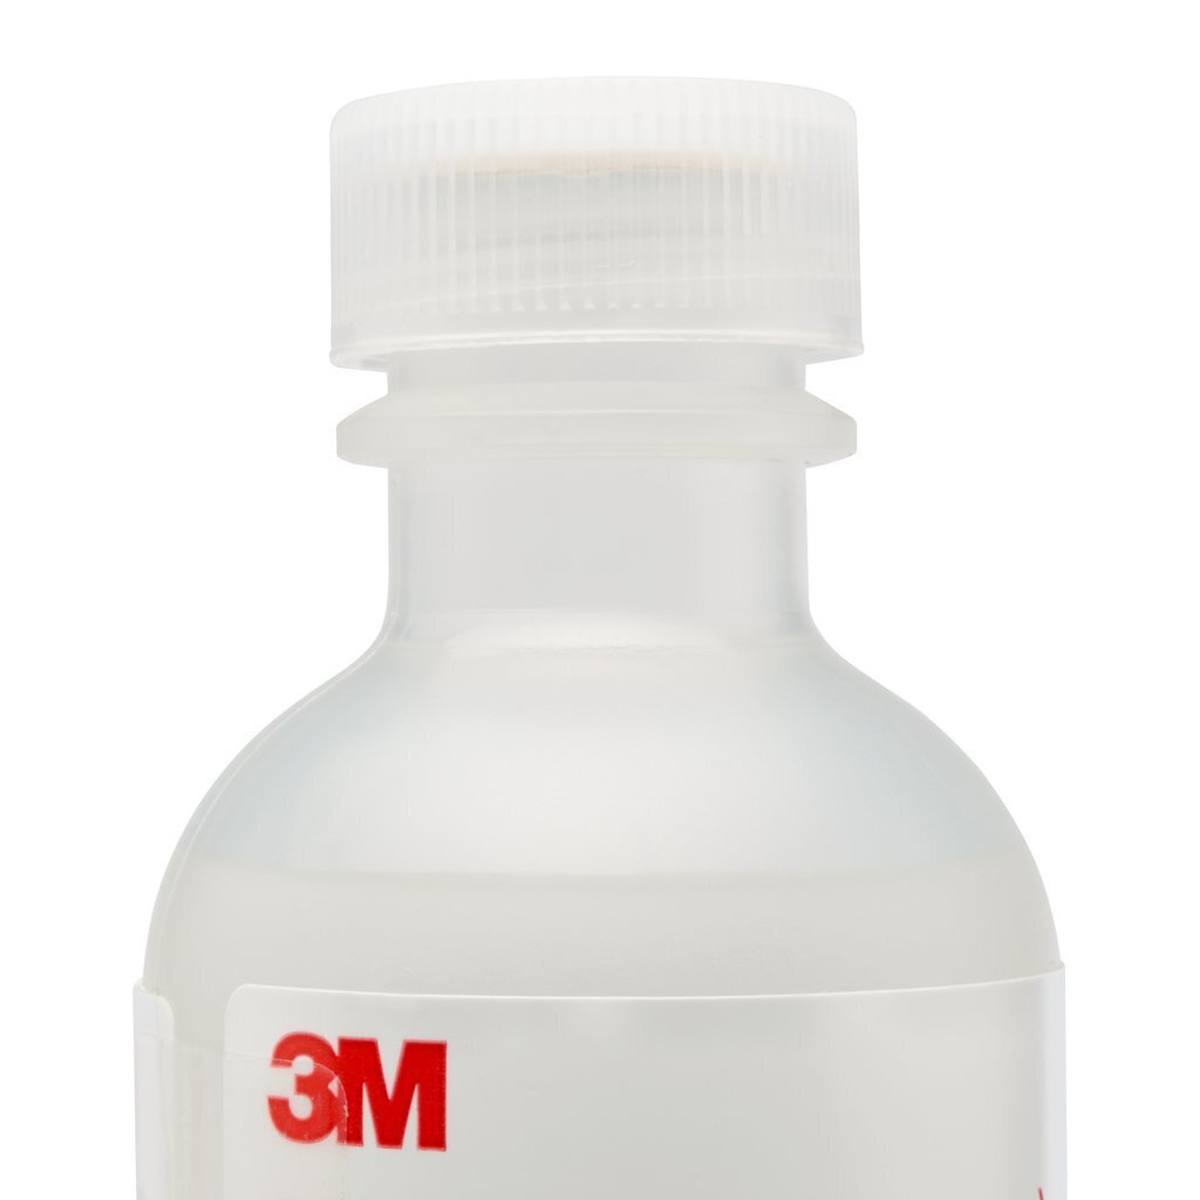 3M FT-11 Fit Test Sensitivity Lösung, Flaschen a 55ml, süss (Pack=6Stück)